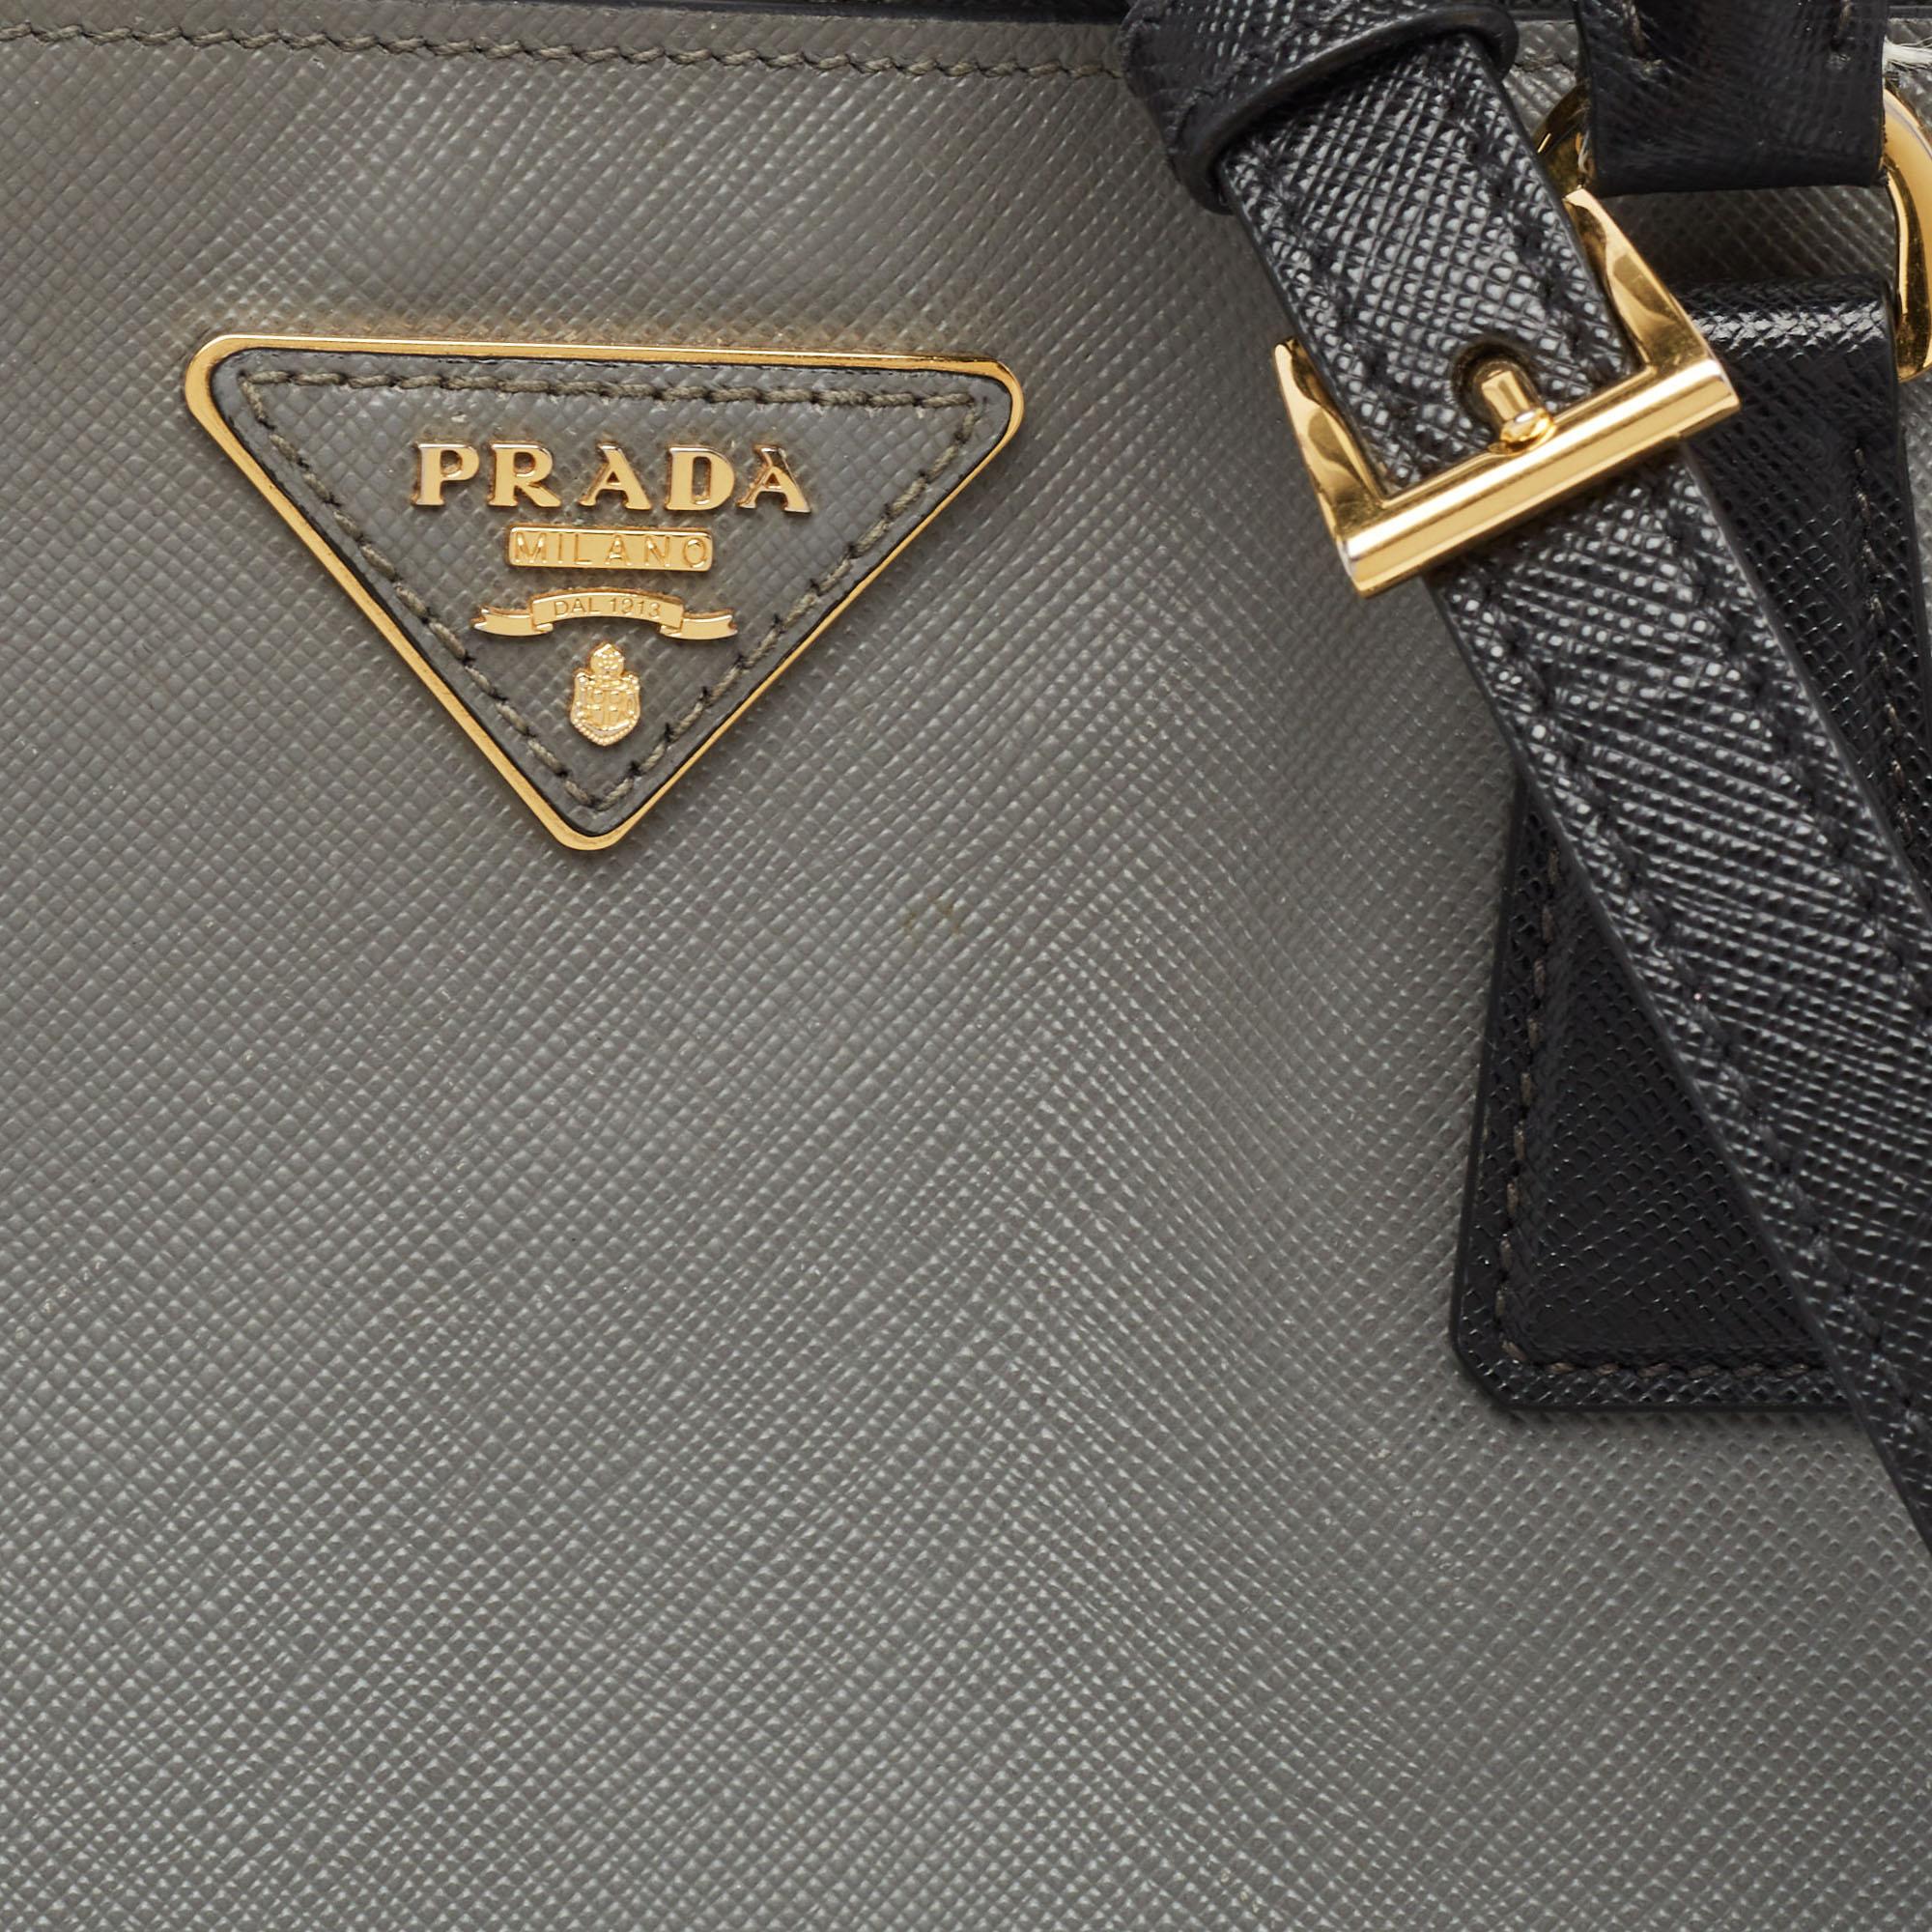 Prada Black/Grey Saffiano Lux Leather Colorblock Galleria Tote For Sale 4